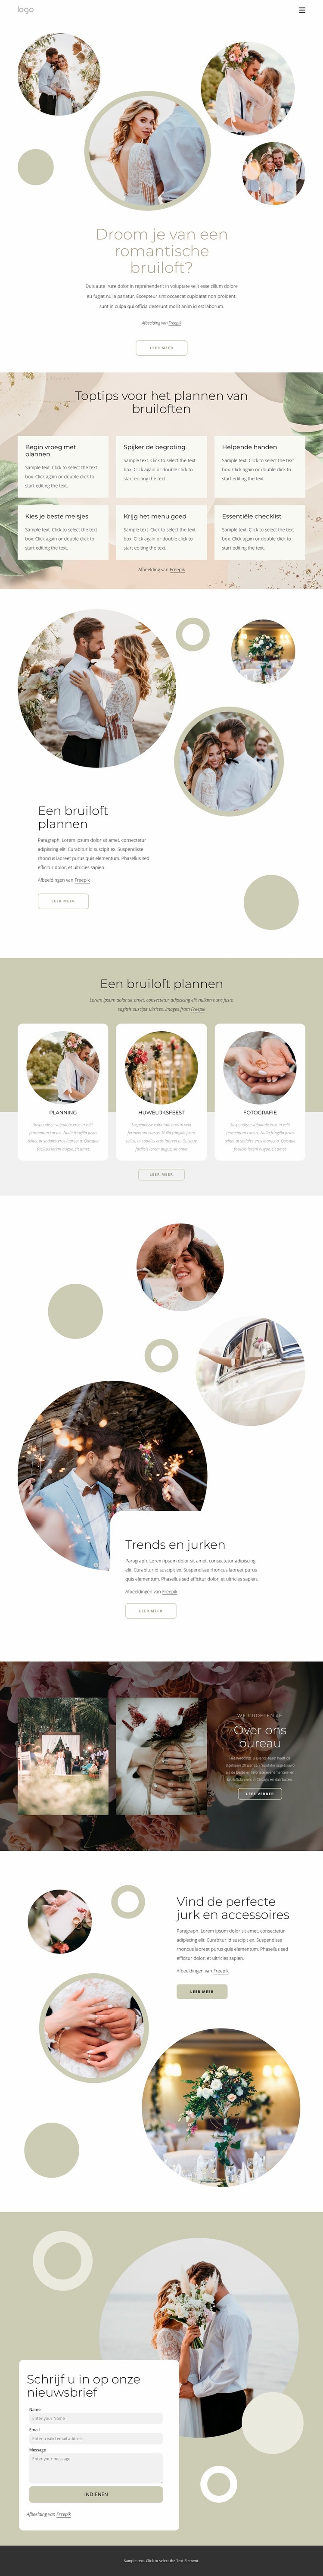 Romantisch huwelijk Website ontwerp